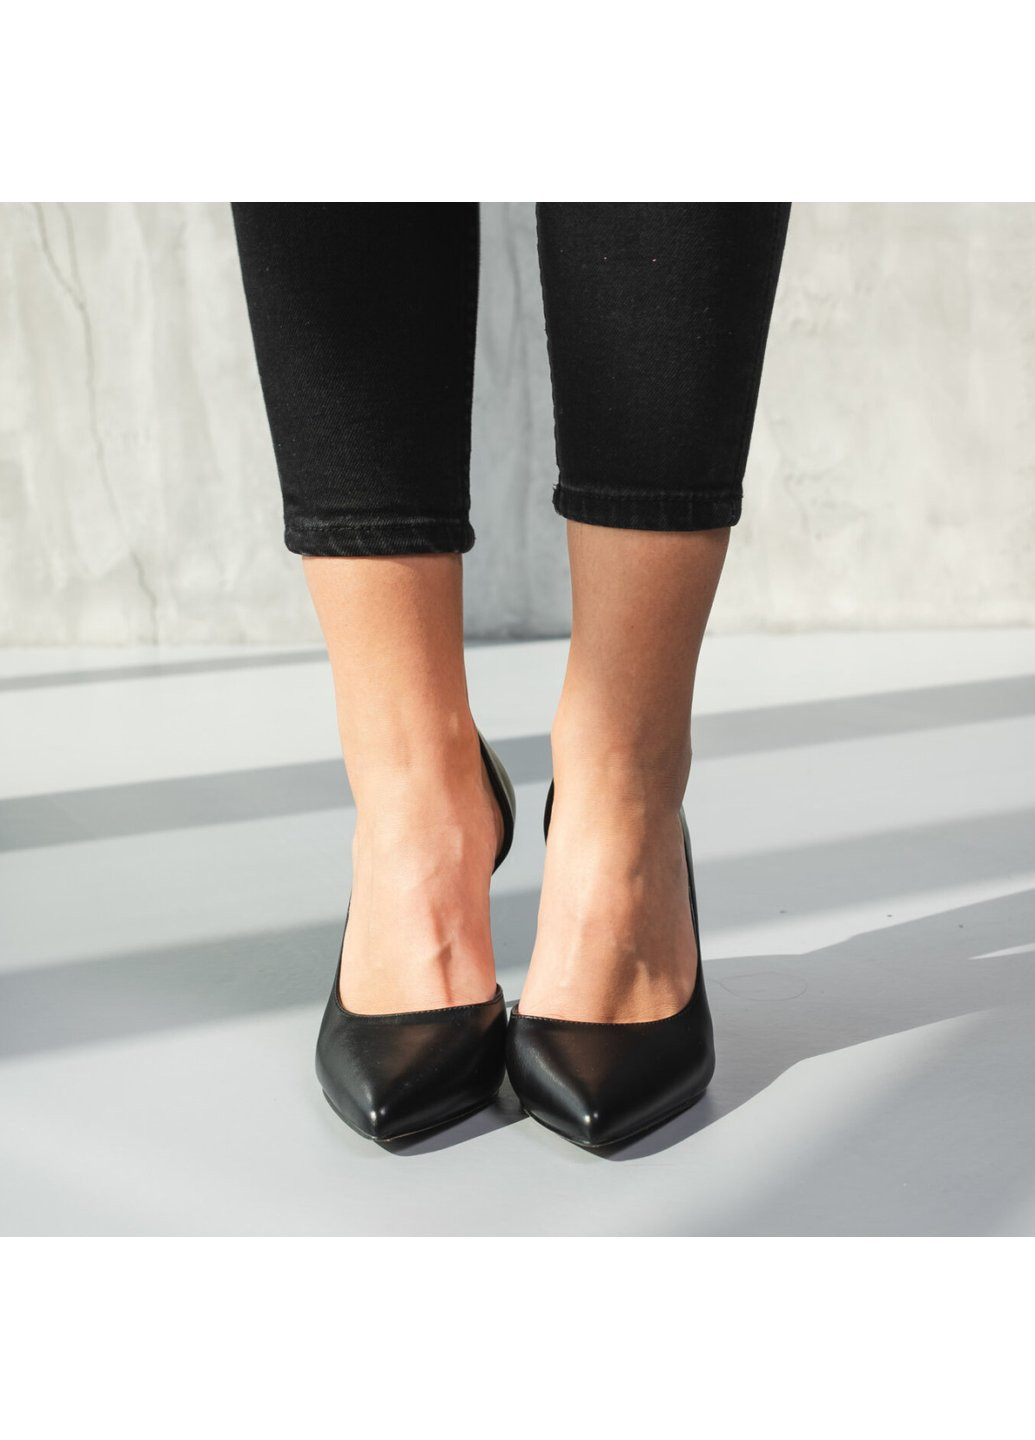 Туфли женские Charcoal 3714 36 23,5 см Черный Fashion